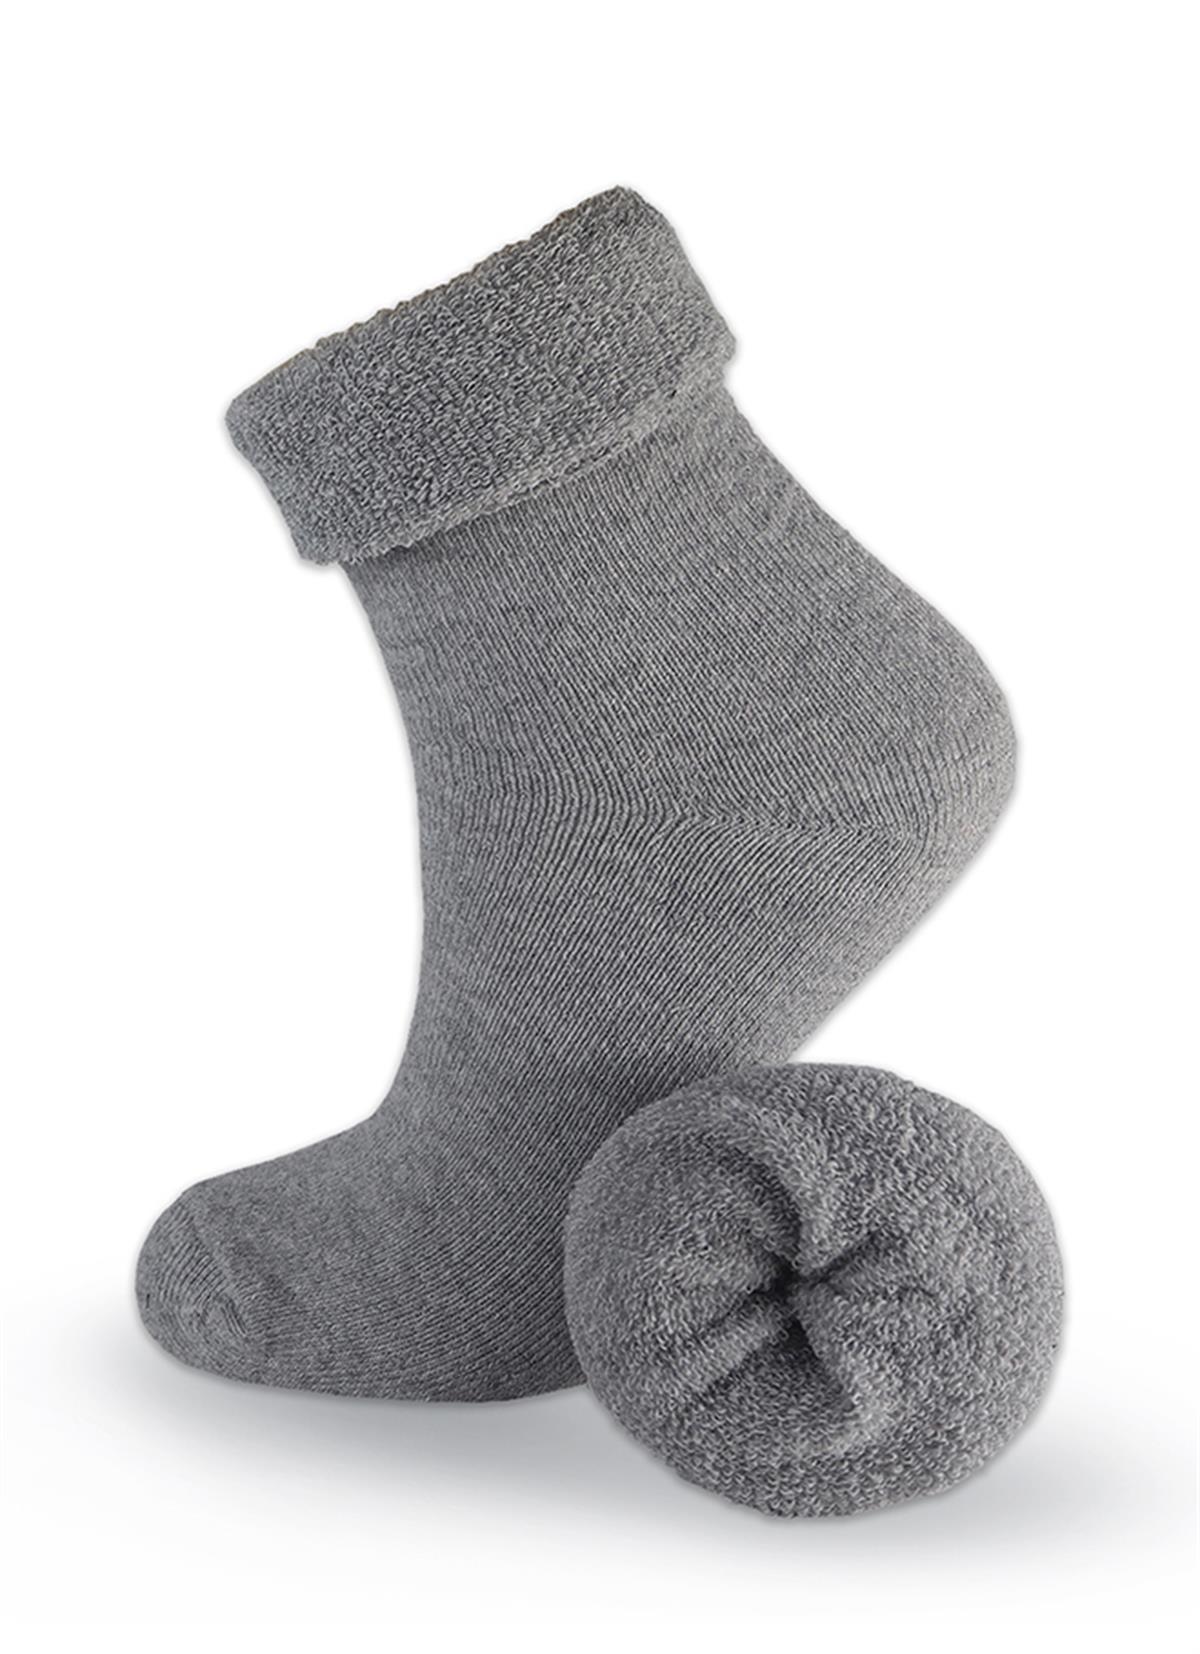 Black Arden Socks - Erkek Kışlık Havlu Çorap 36-40 Numara Tek Çift